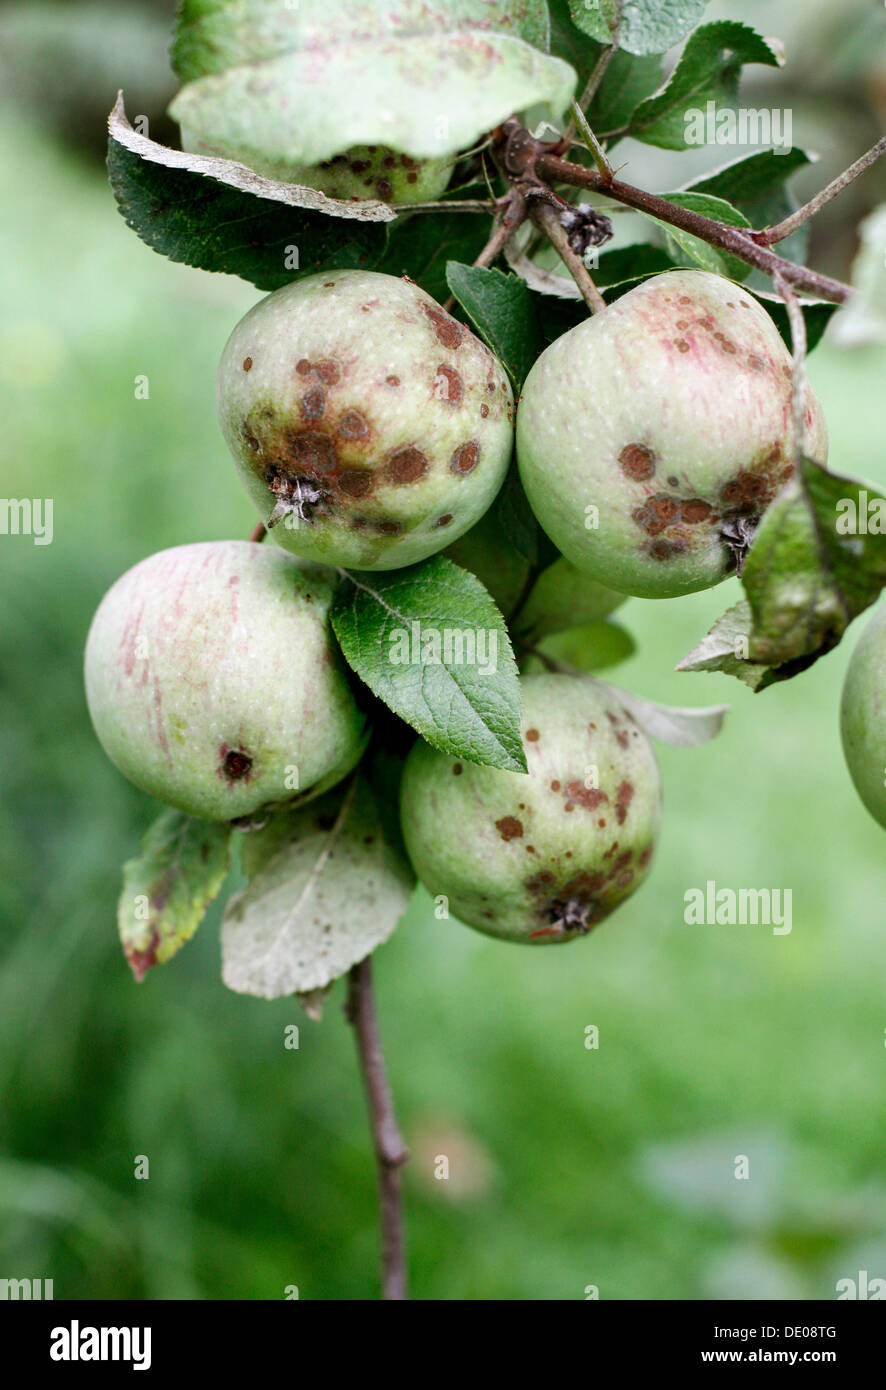 Las manzanas infectadas con Apple scab disease (Venturia inaequalis) Foto de stock